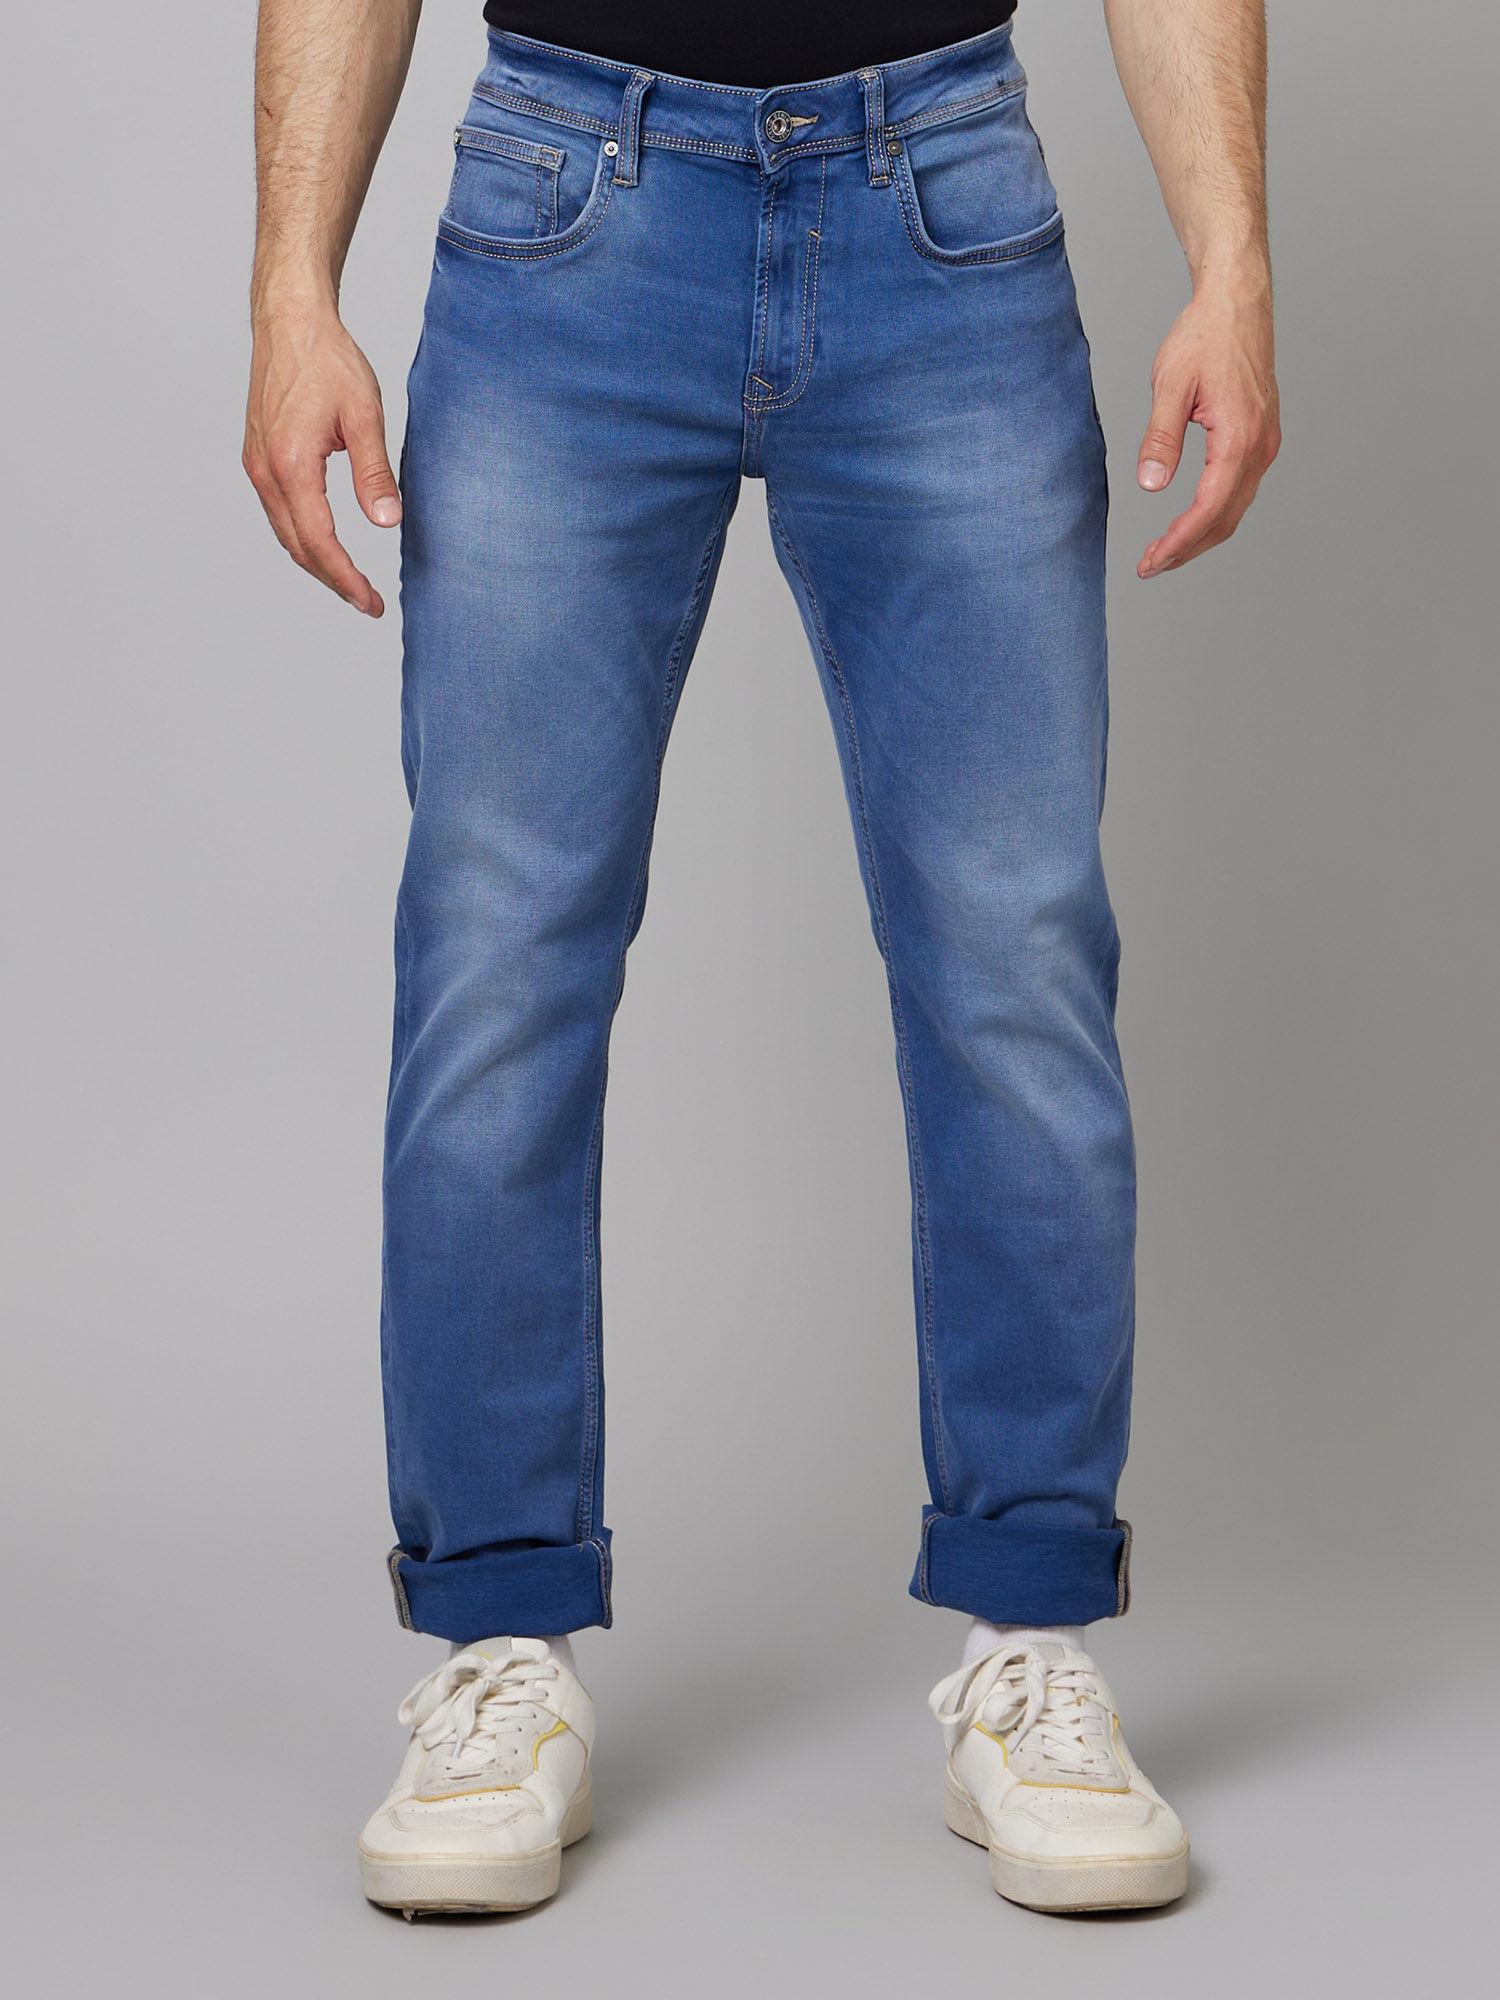 mens blue pant jeans